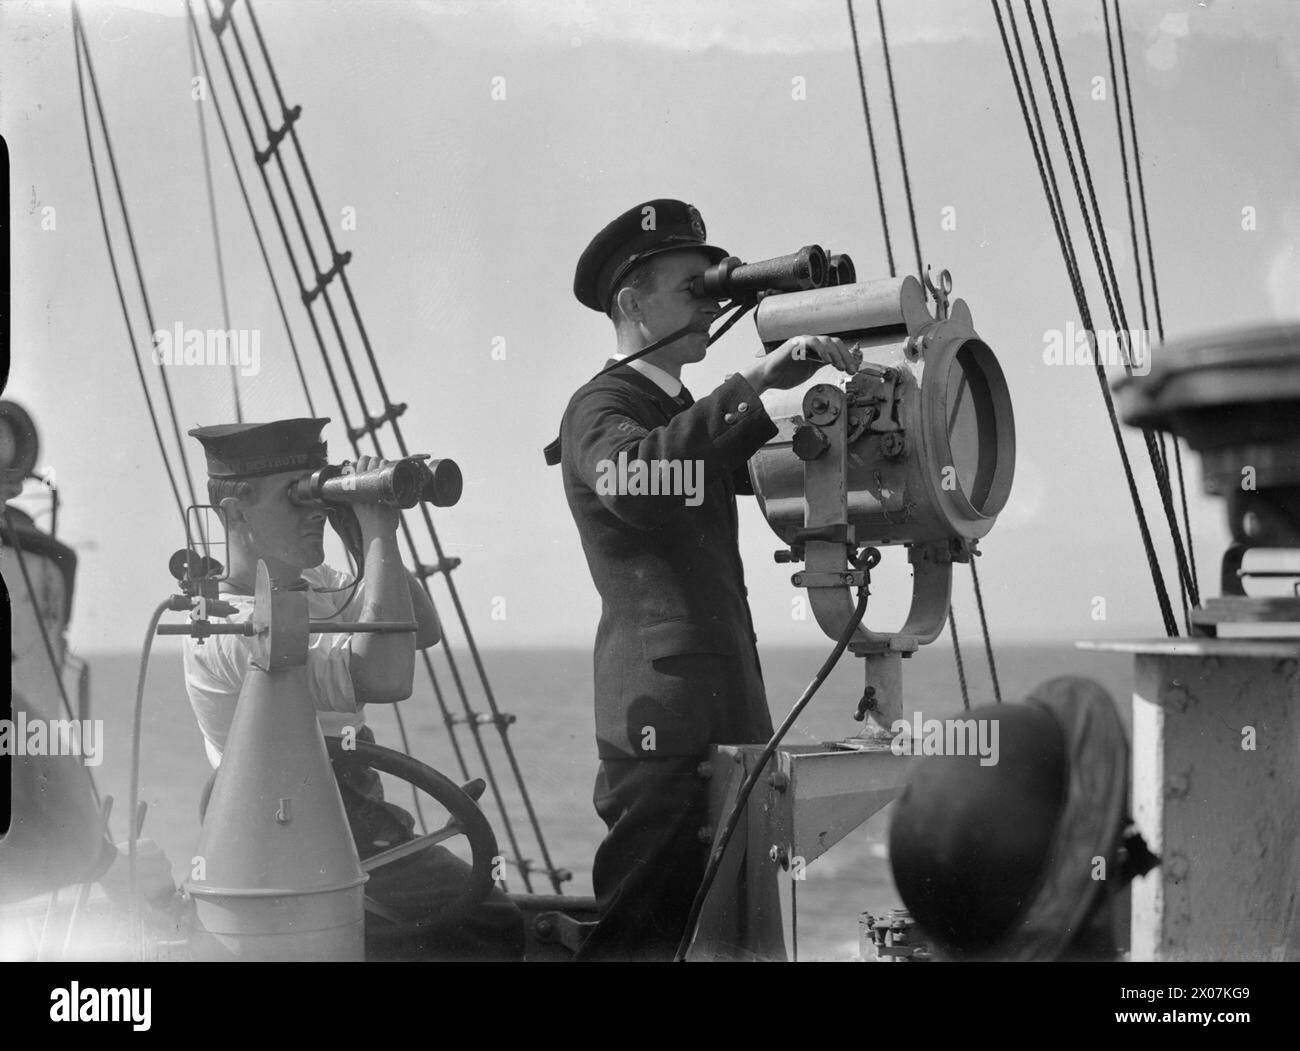 DIE ROYAL NAVY WÄHREND DES ZWEITEN WELTKRIEGS – ein Mitglied der Schiffsbesatzung sendet ein Signal an ein Verfolgungsschiff mit einer Signallampe an Bord der HMS BROKEN, während sie auf See ist Royal Navy BROKEN (HMS) Stockfoto